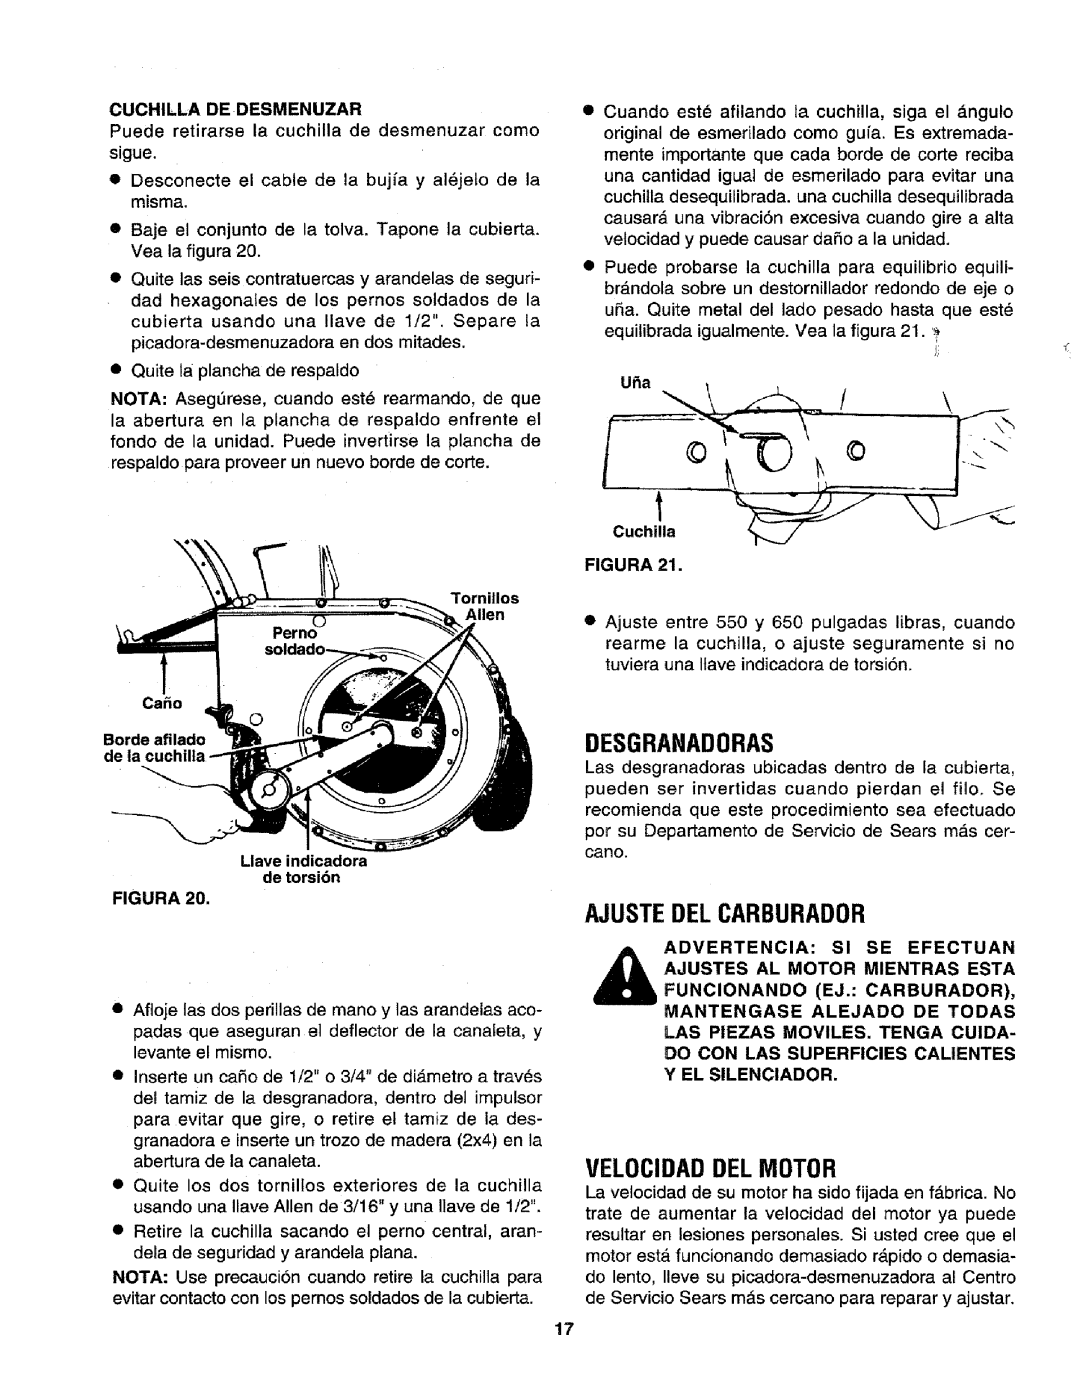 Craftsman 79585 manual Desgranadoras, Ajuste Del Carburador, Velocidaddel Motor 